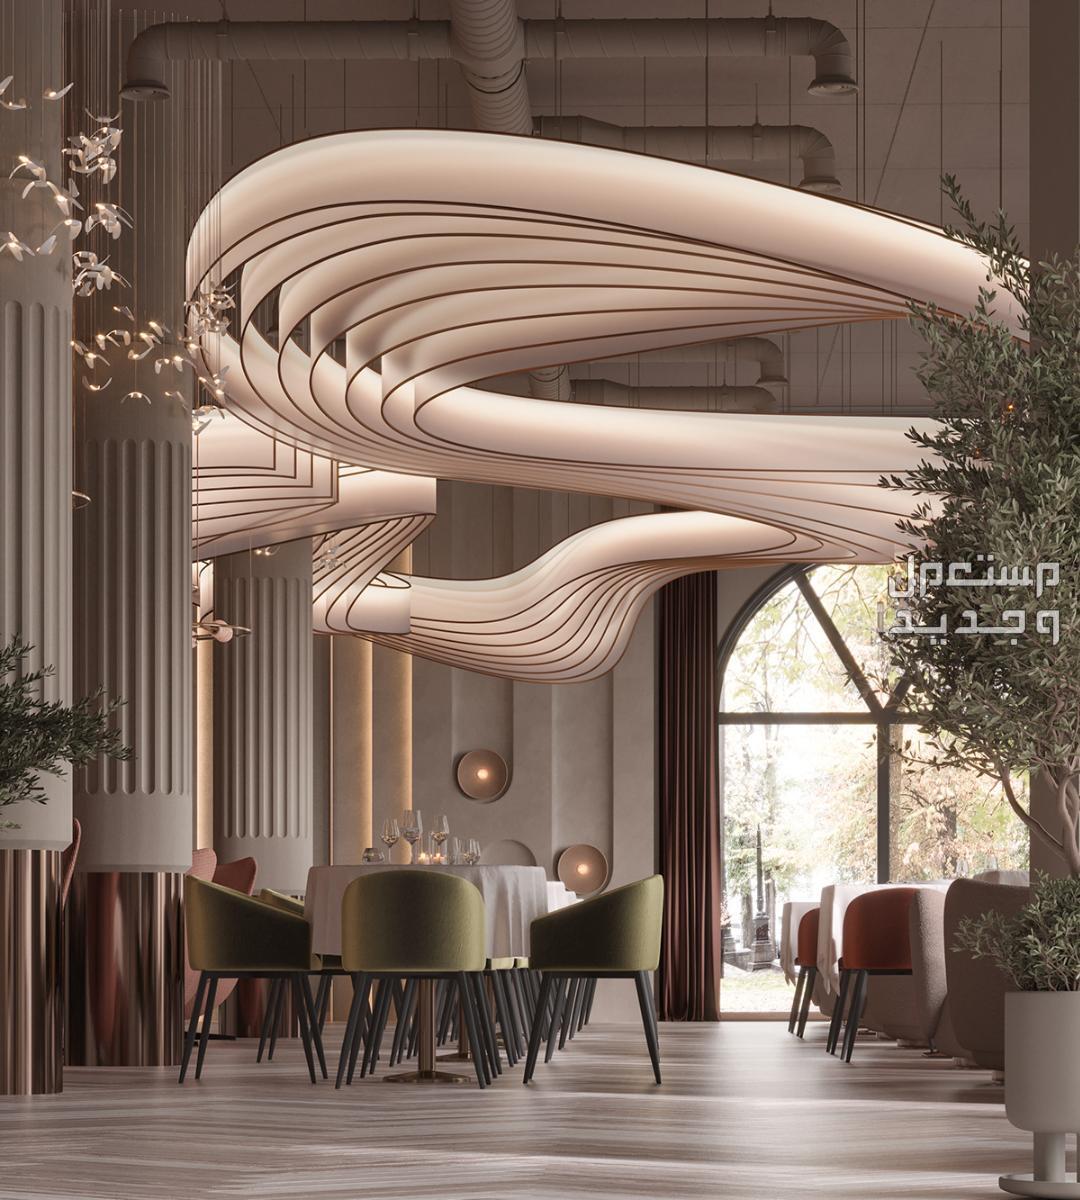 تصميم و تنفيذ ديكورات محلات مطاعم وكوفي تسليم مفتاح في الرياض